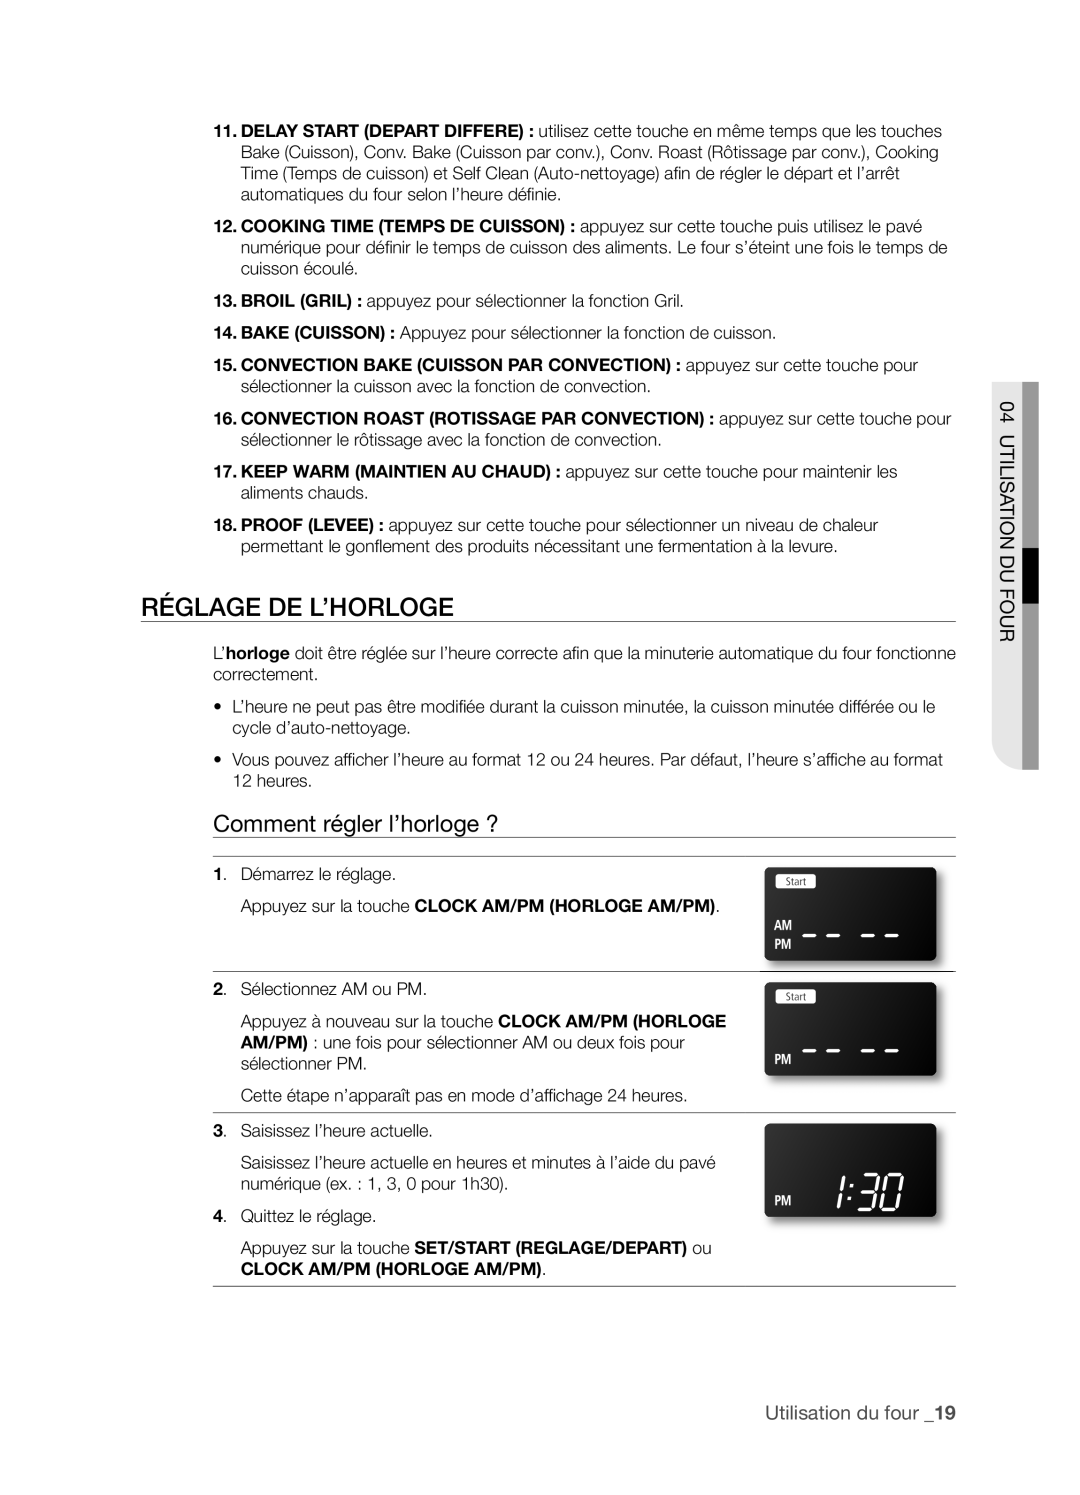 Samsung FTQ352IWX RéGLAGE DE L’HORLOGE, Comment régler l’horloge ?, Utilisation Du Four, Utilisation du four _19 